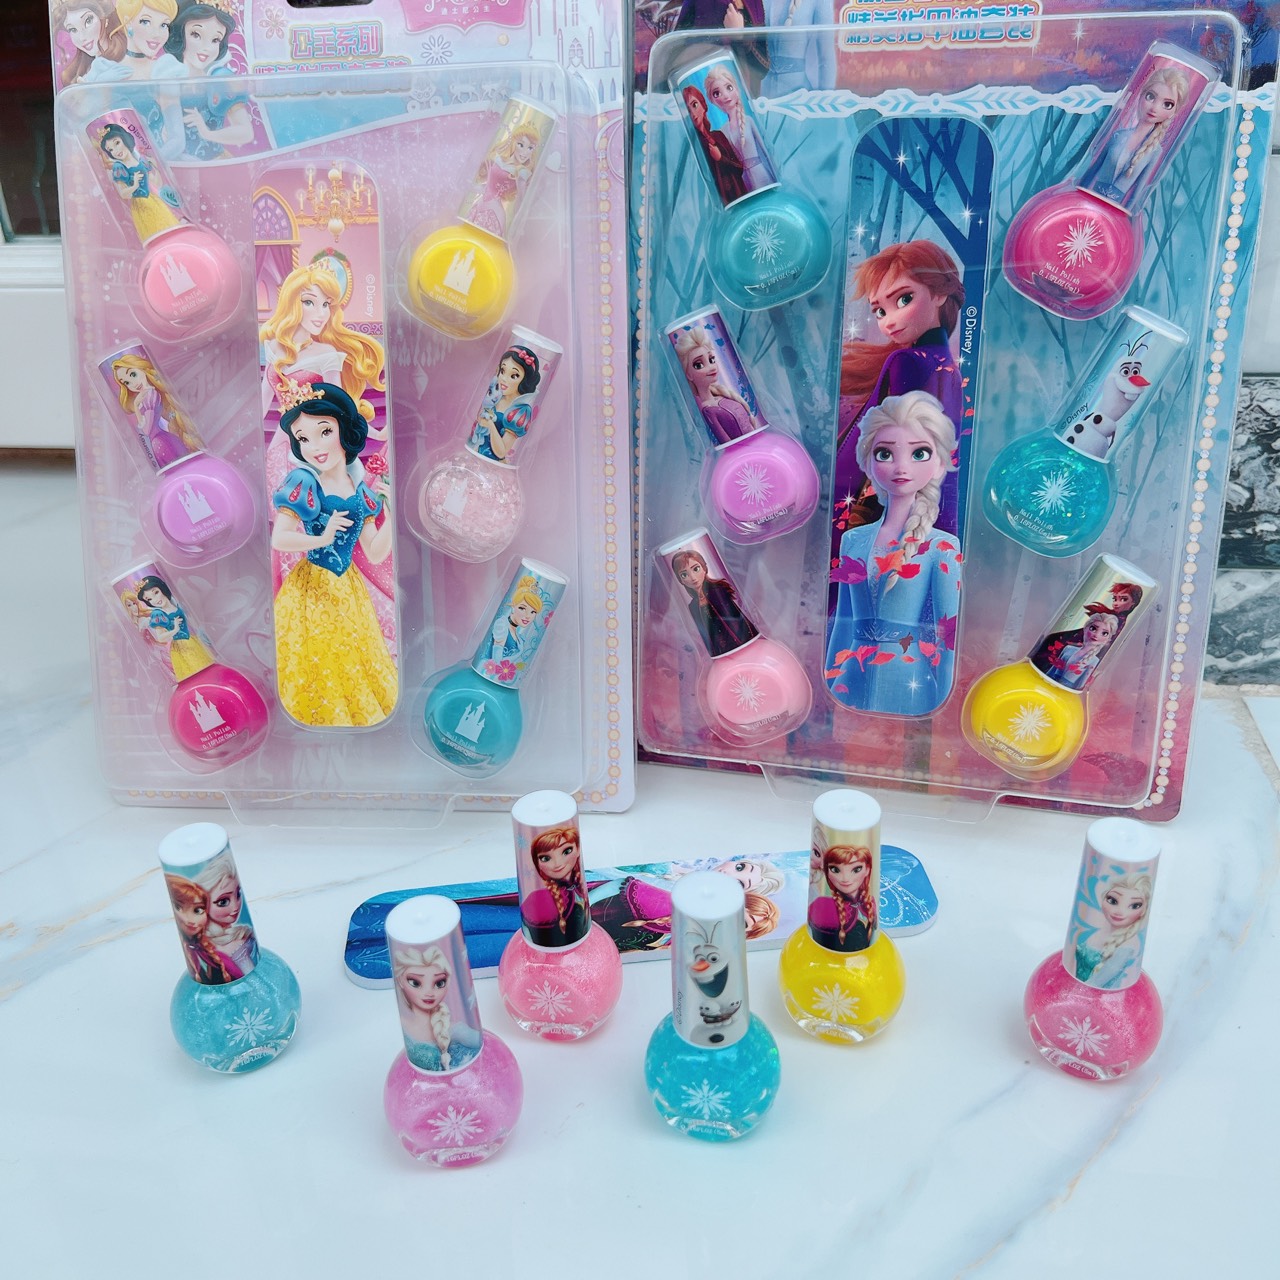 Sét 6 chai sơn móng tay an toàn dễ lột cho bé gái, đồ chơi lành tính an toàn cho bé - quà tặng yêu thích cho bé gái